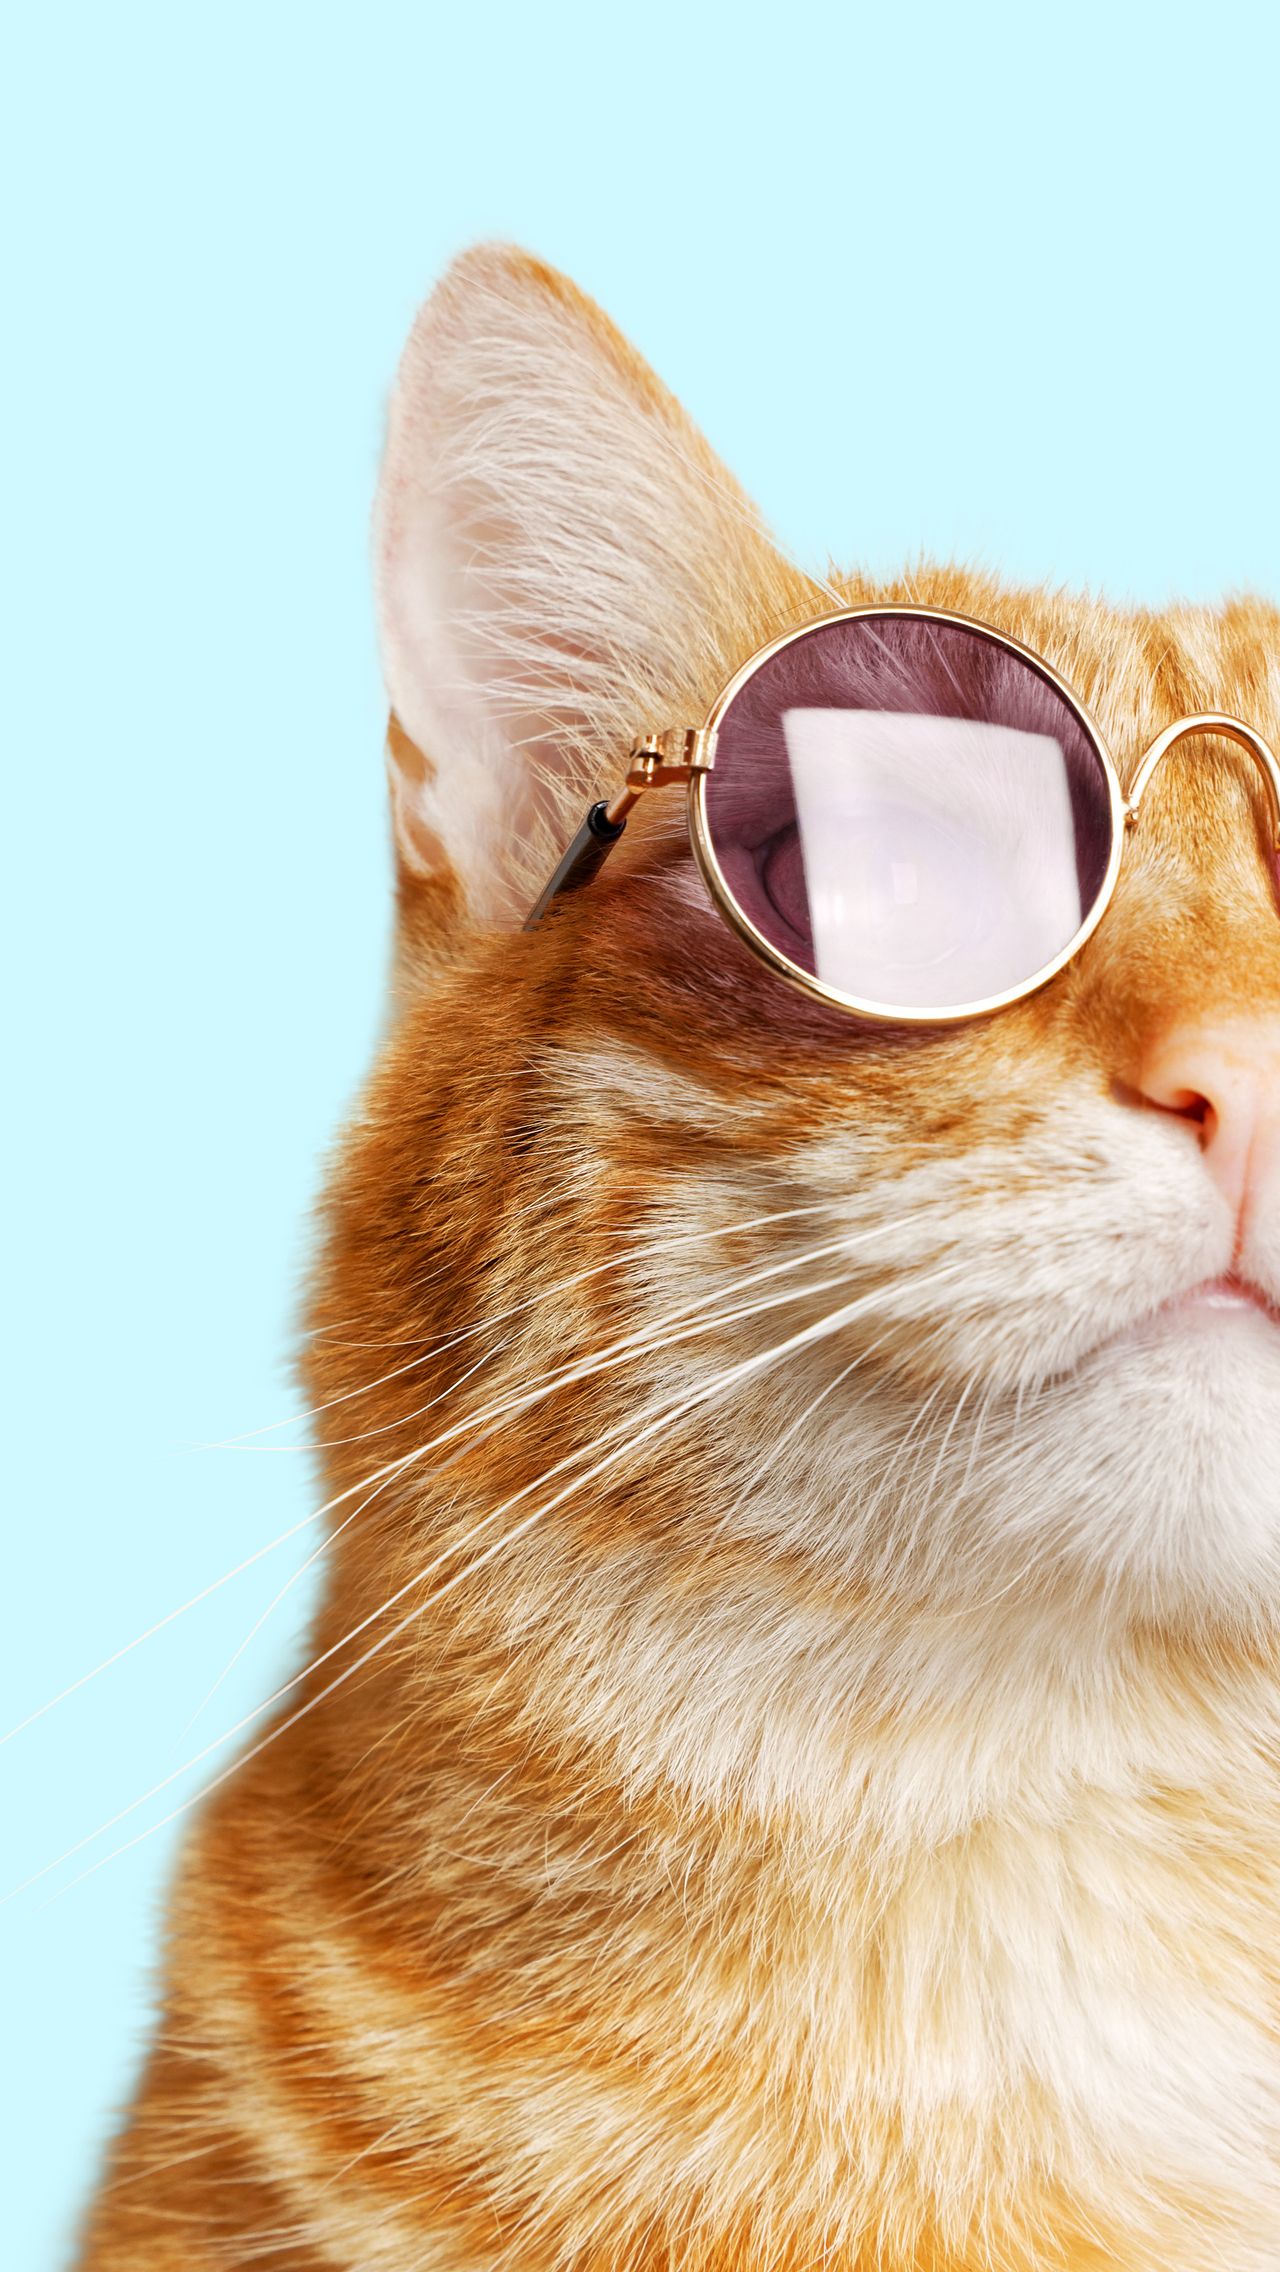 Кот надевает солнечные очки — смешное видео - Чемпионат